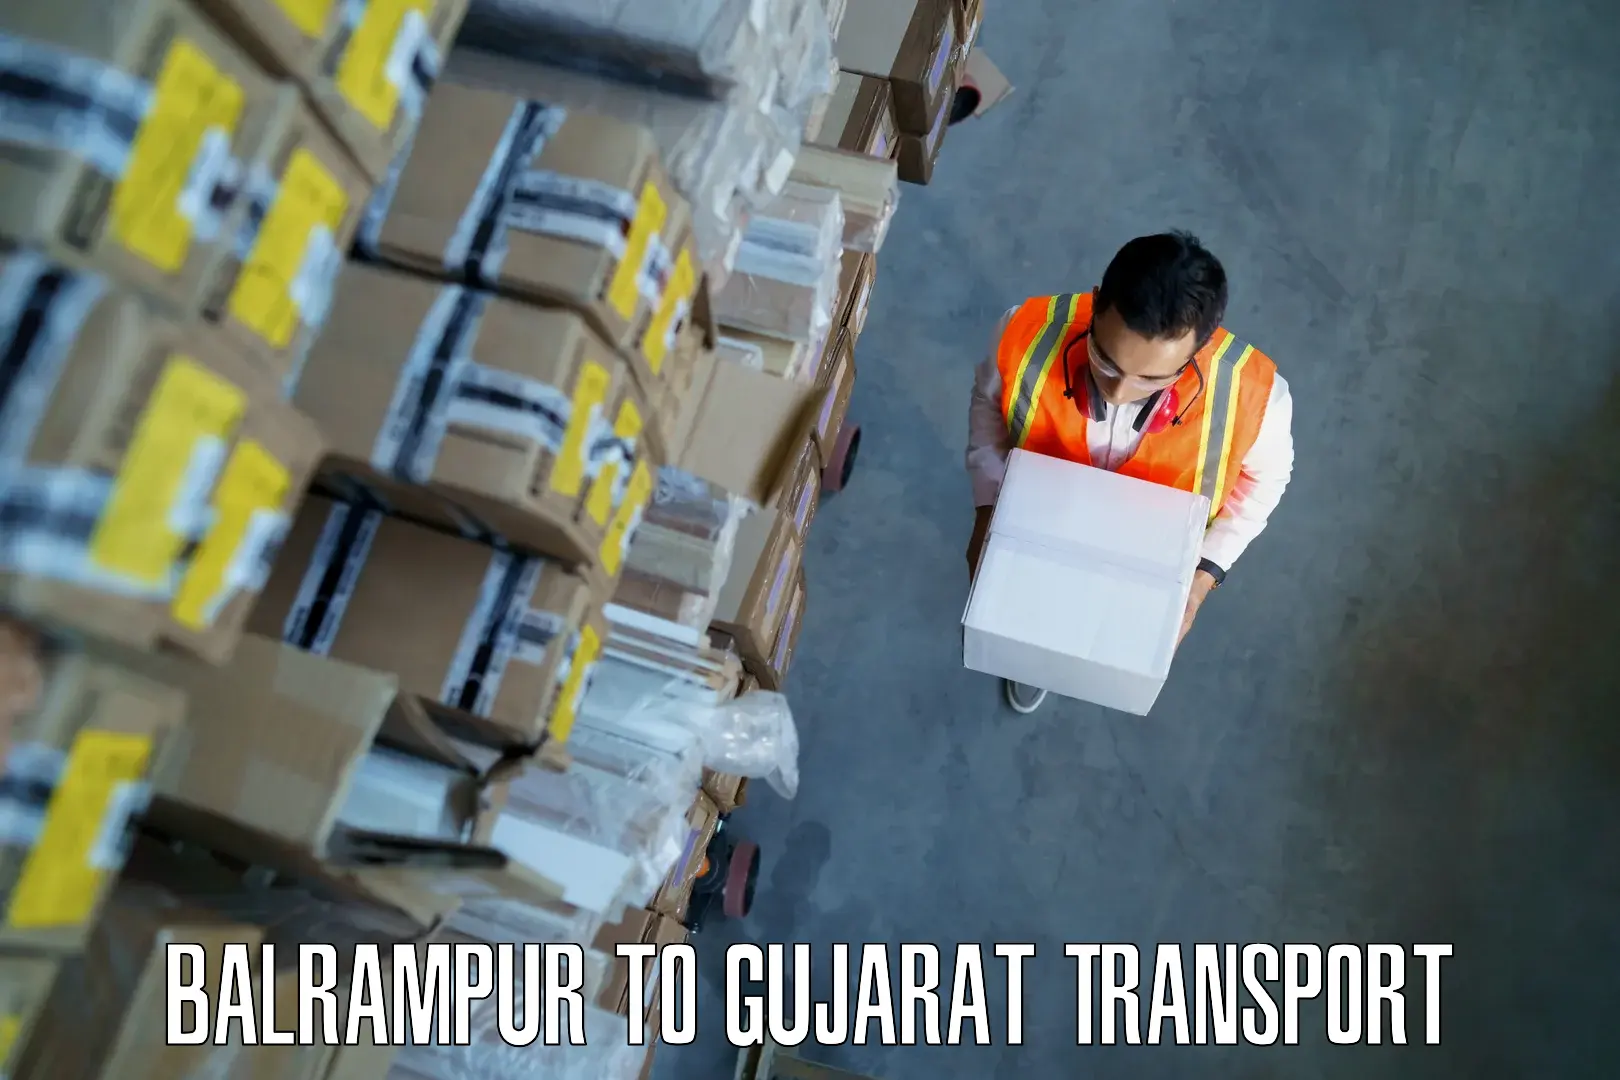 Container transport service Balrampur to Gandhidham